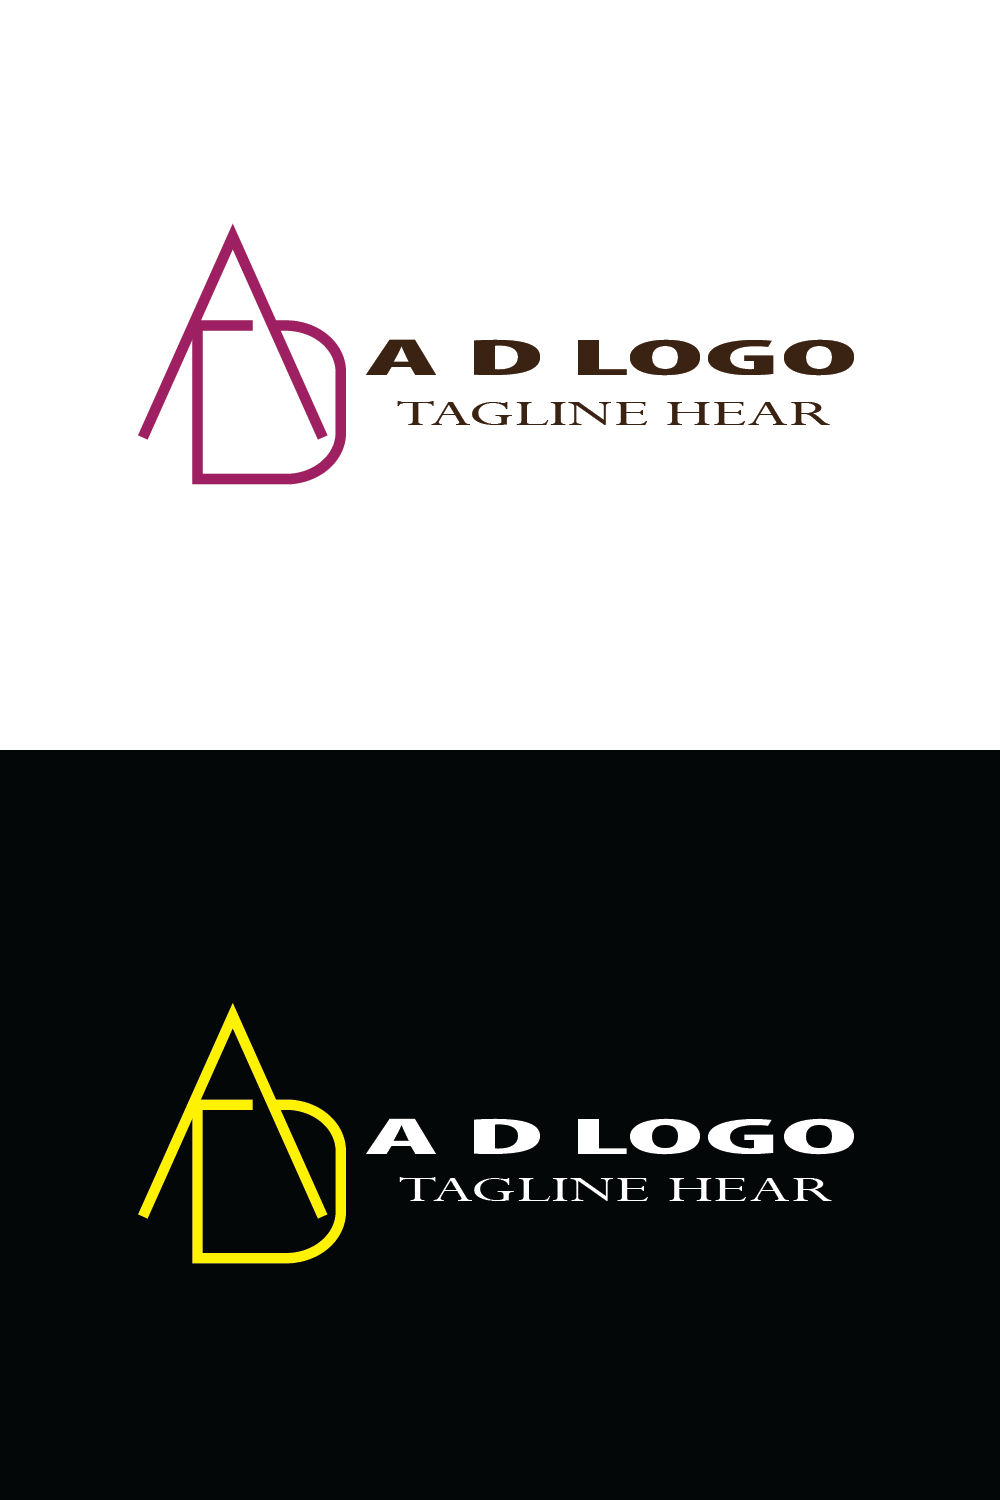 Minimalist A & D Letters Logo Pinterest image.